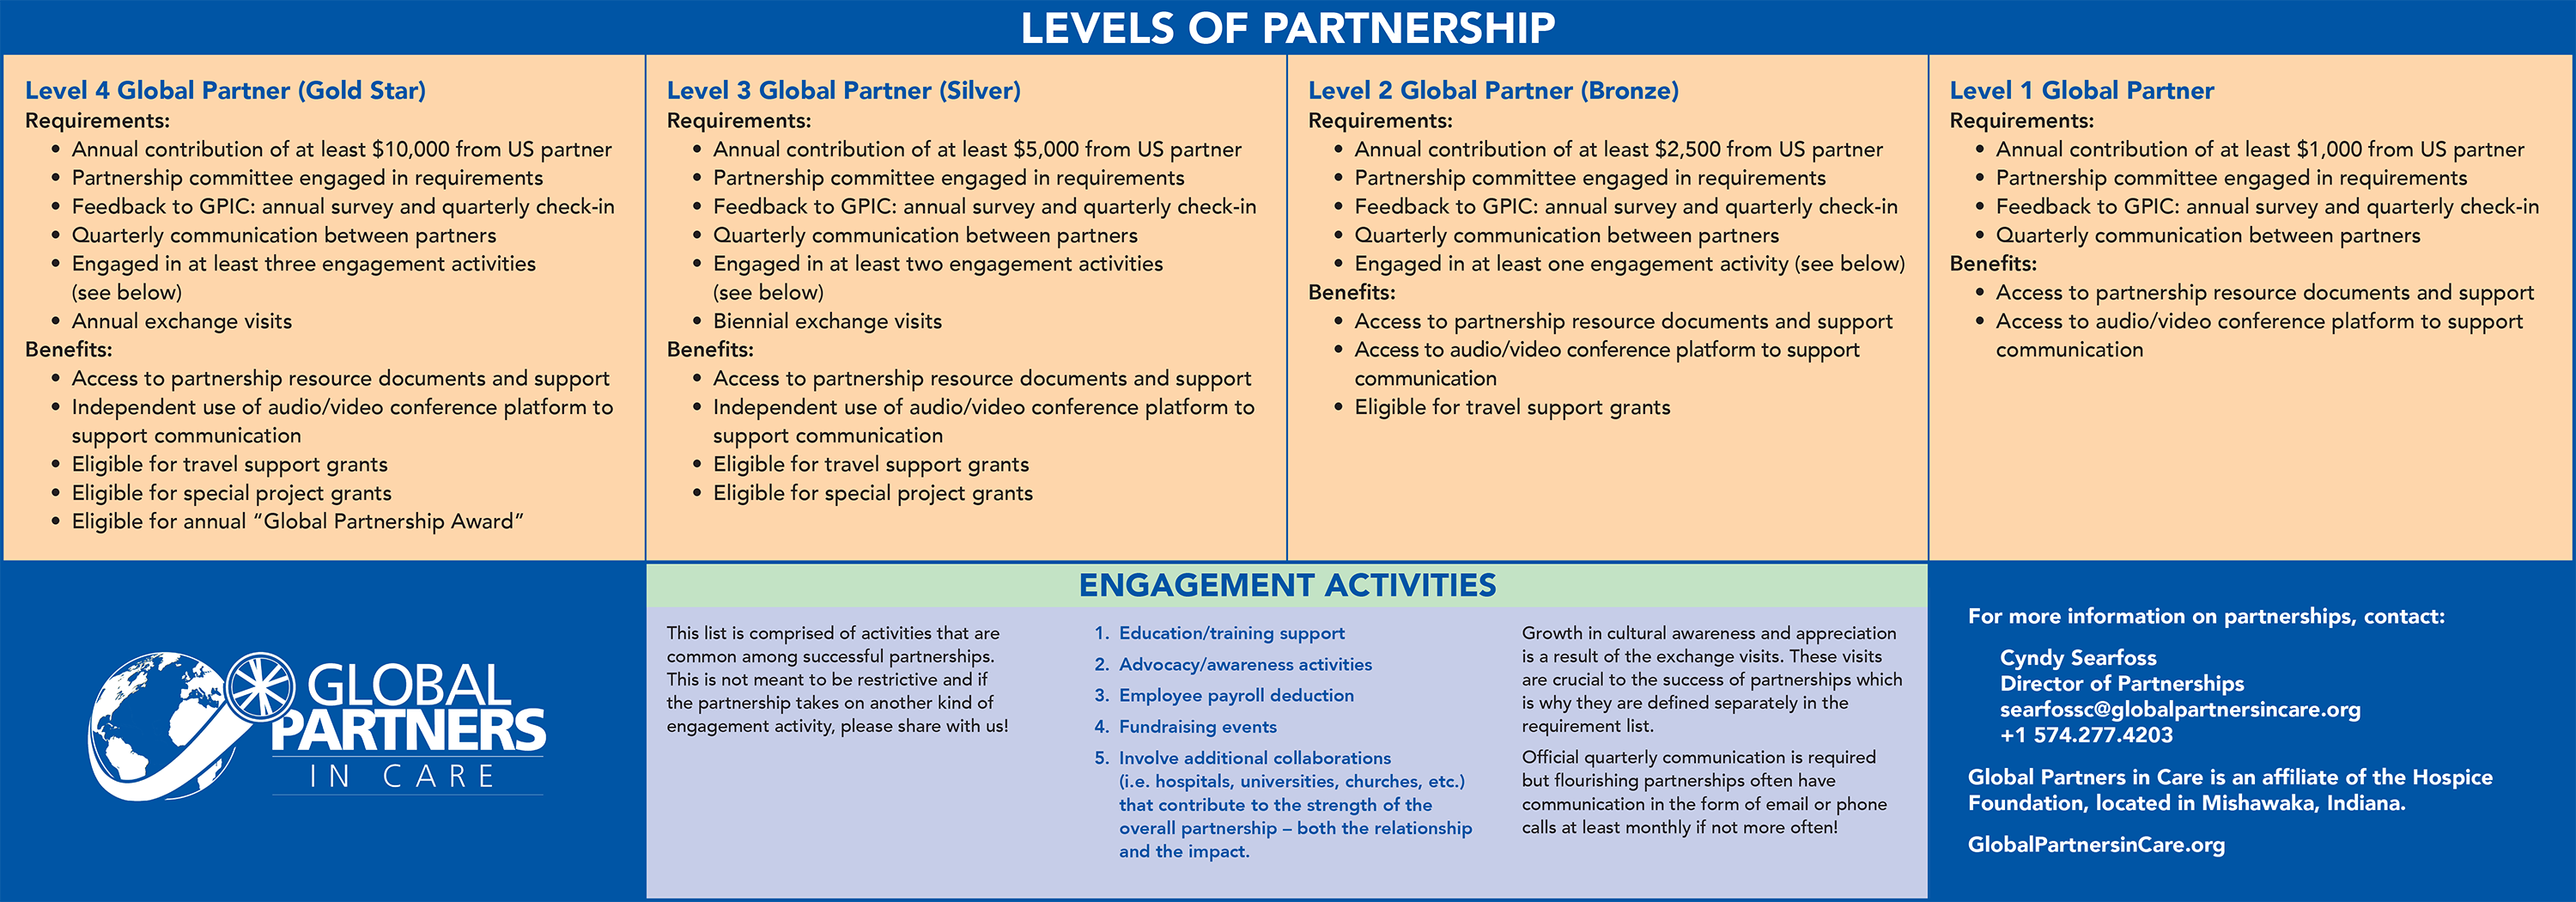 levels_of_partnerships_2